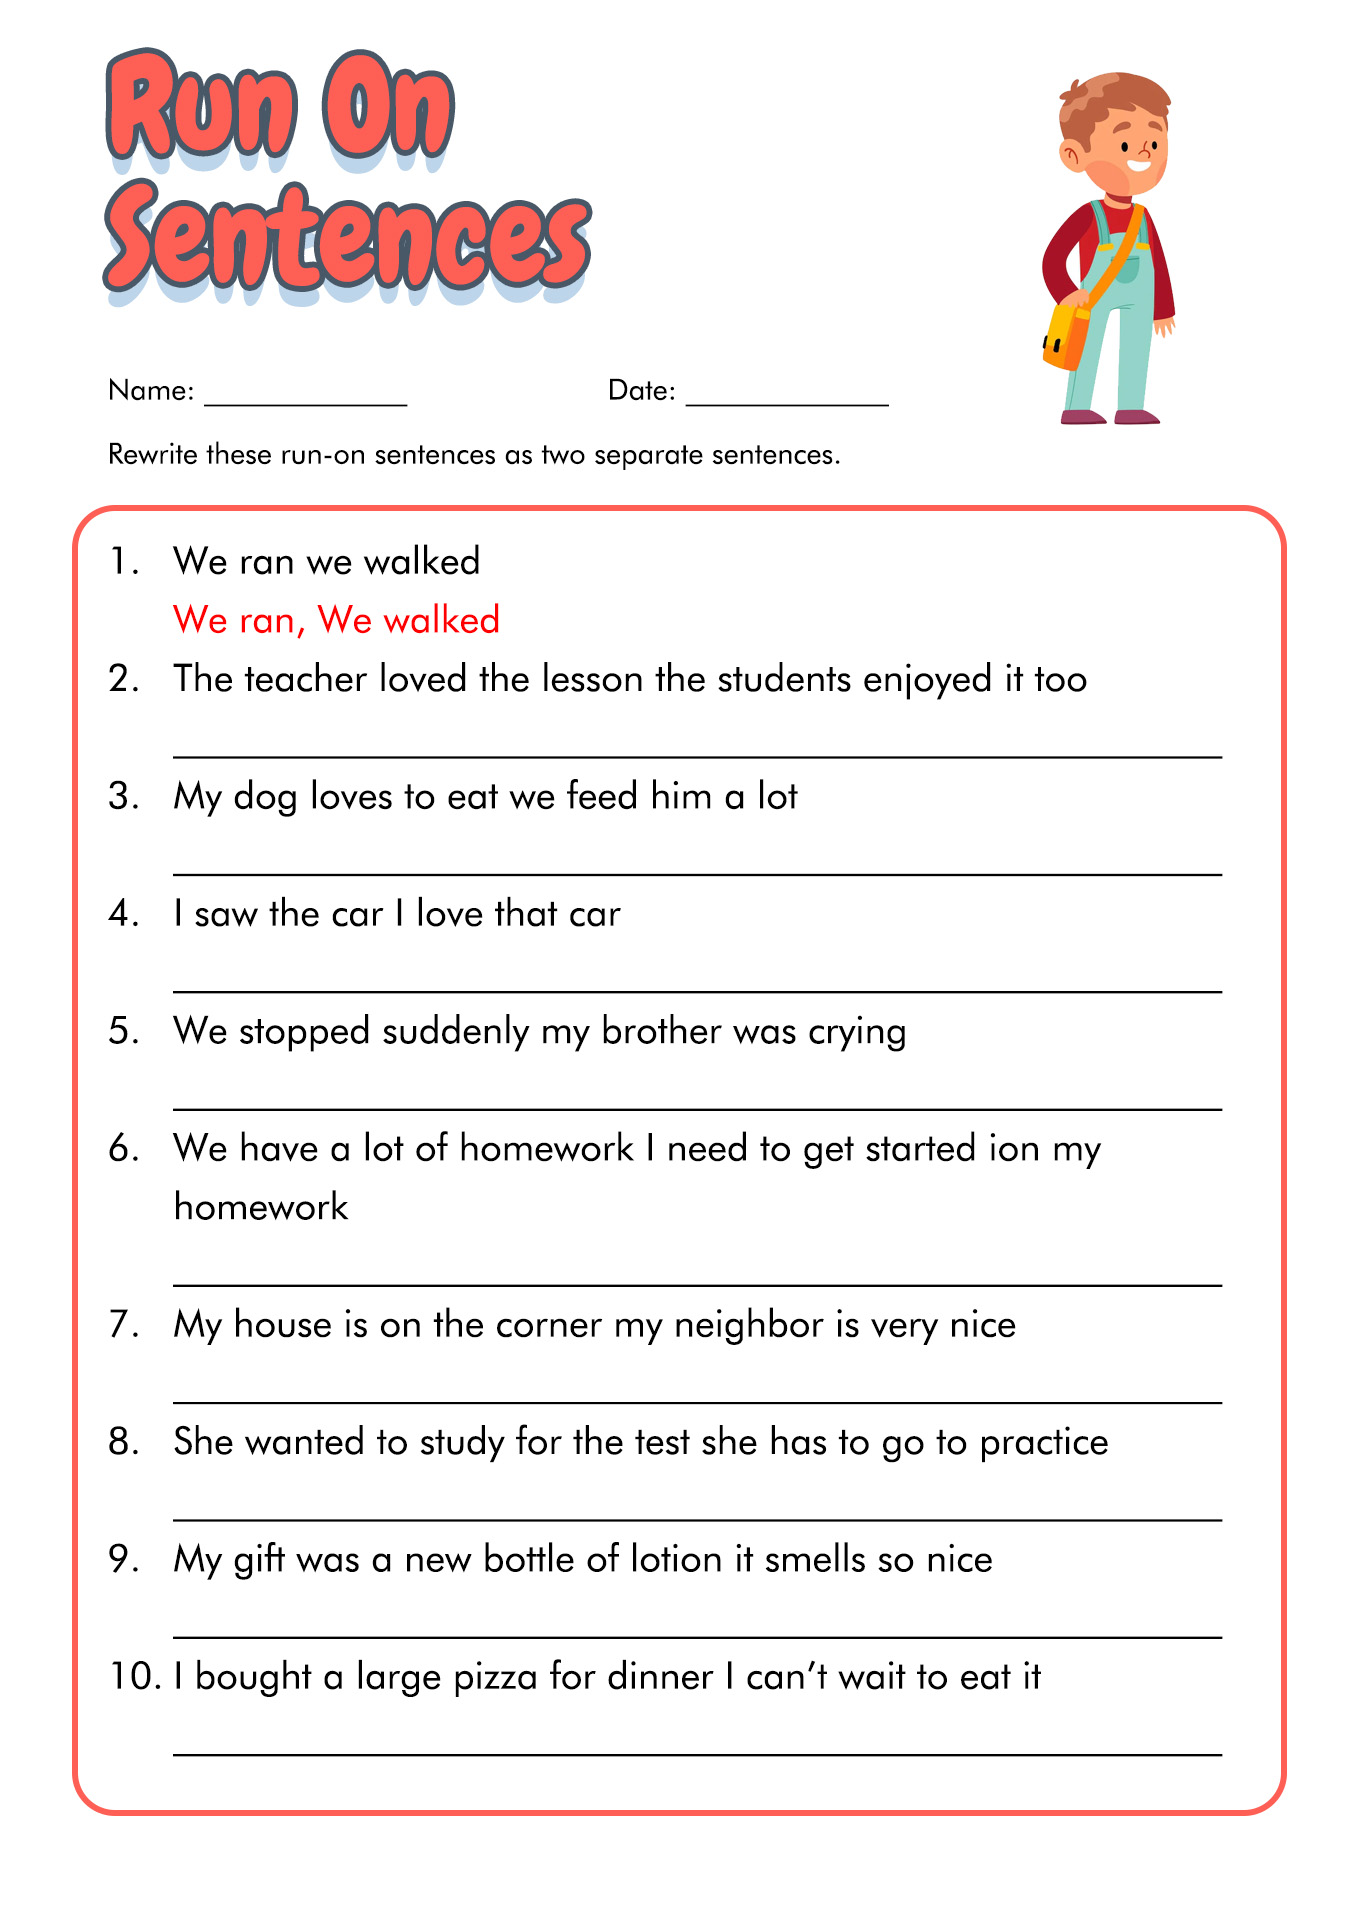 4th Grade English Worksheets Image